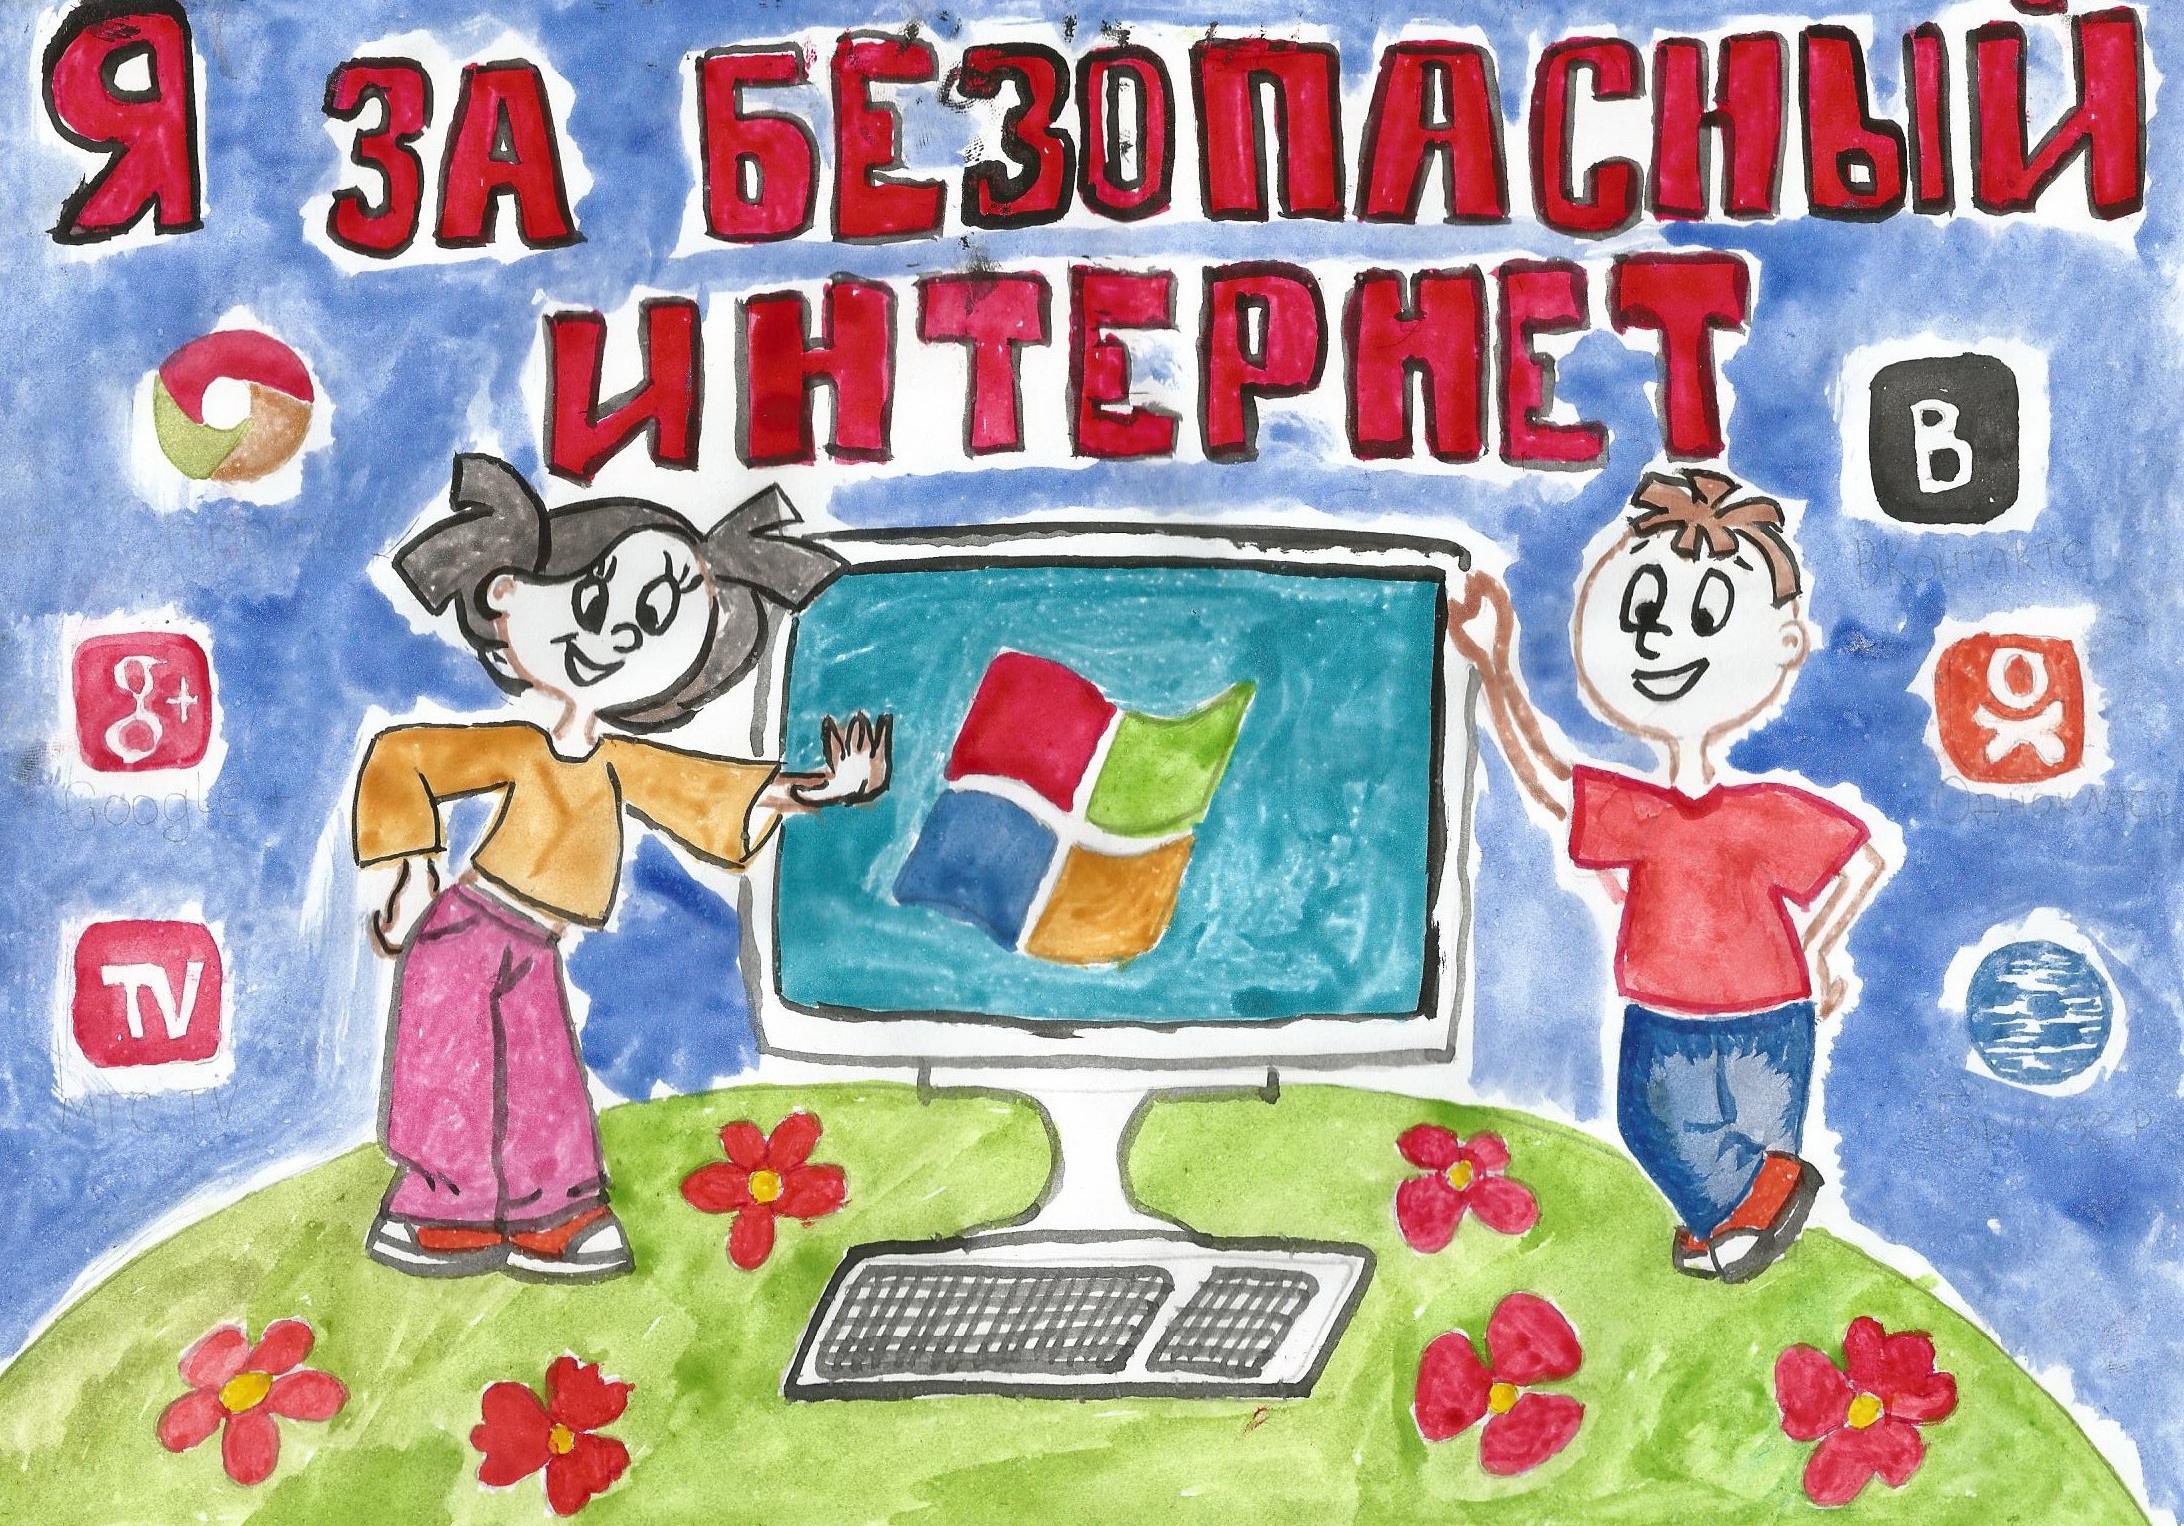 Безопасный интернет плакат